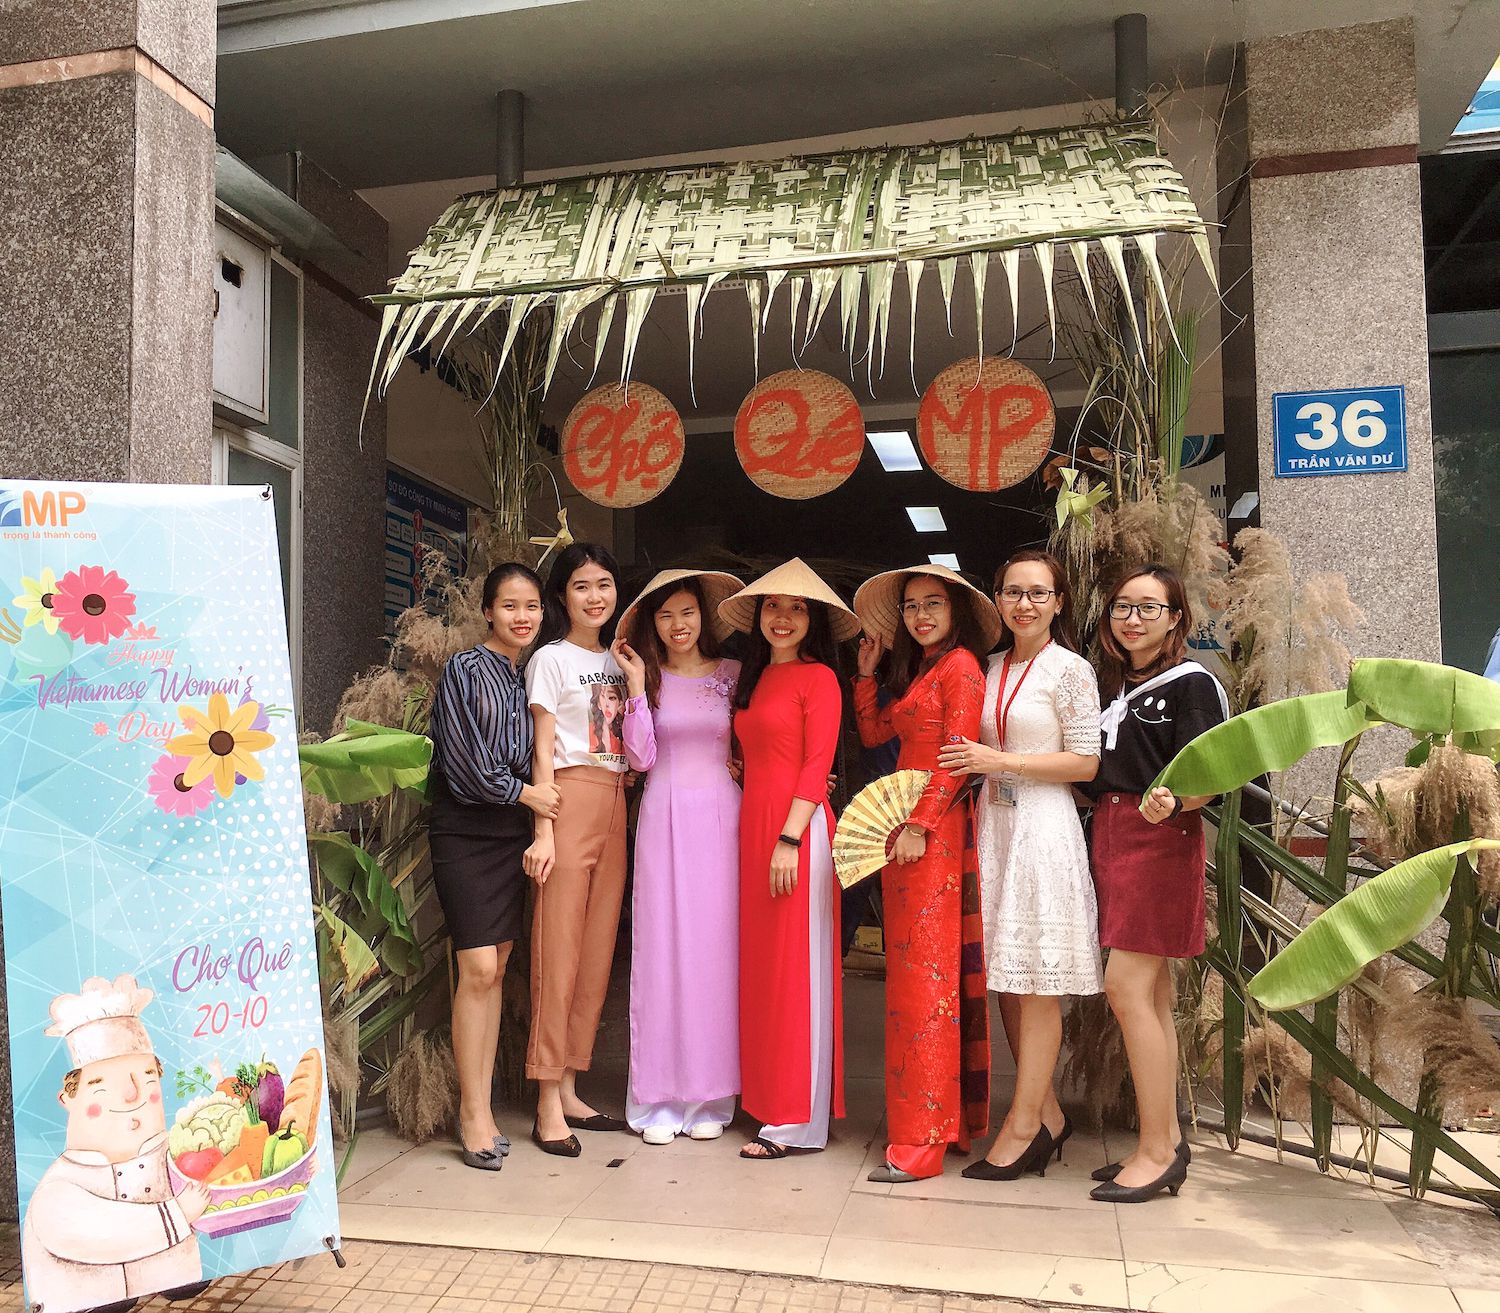  Ngày hội “Chợ Quê MP” mừng ngày phụ nữ Việt Nam